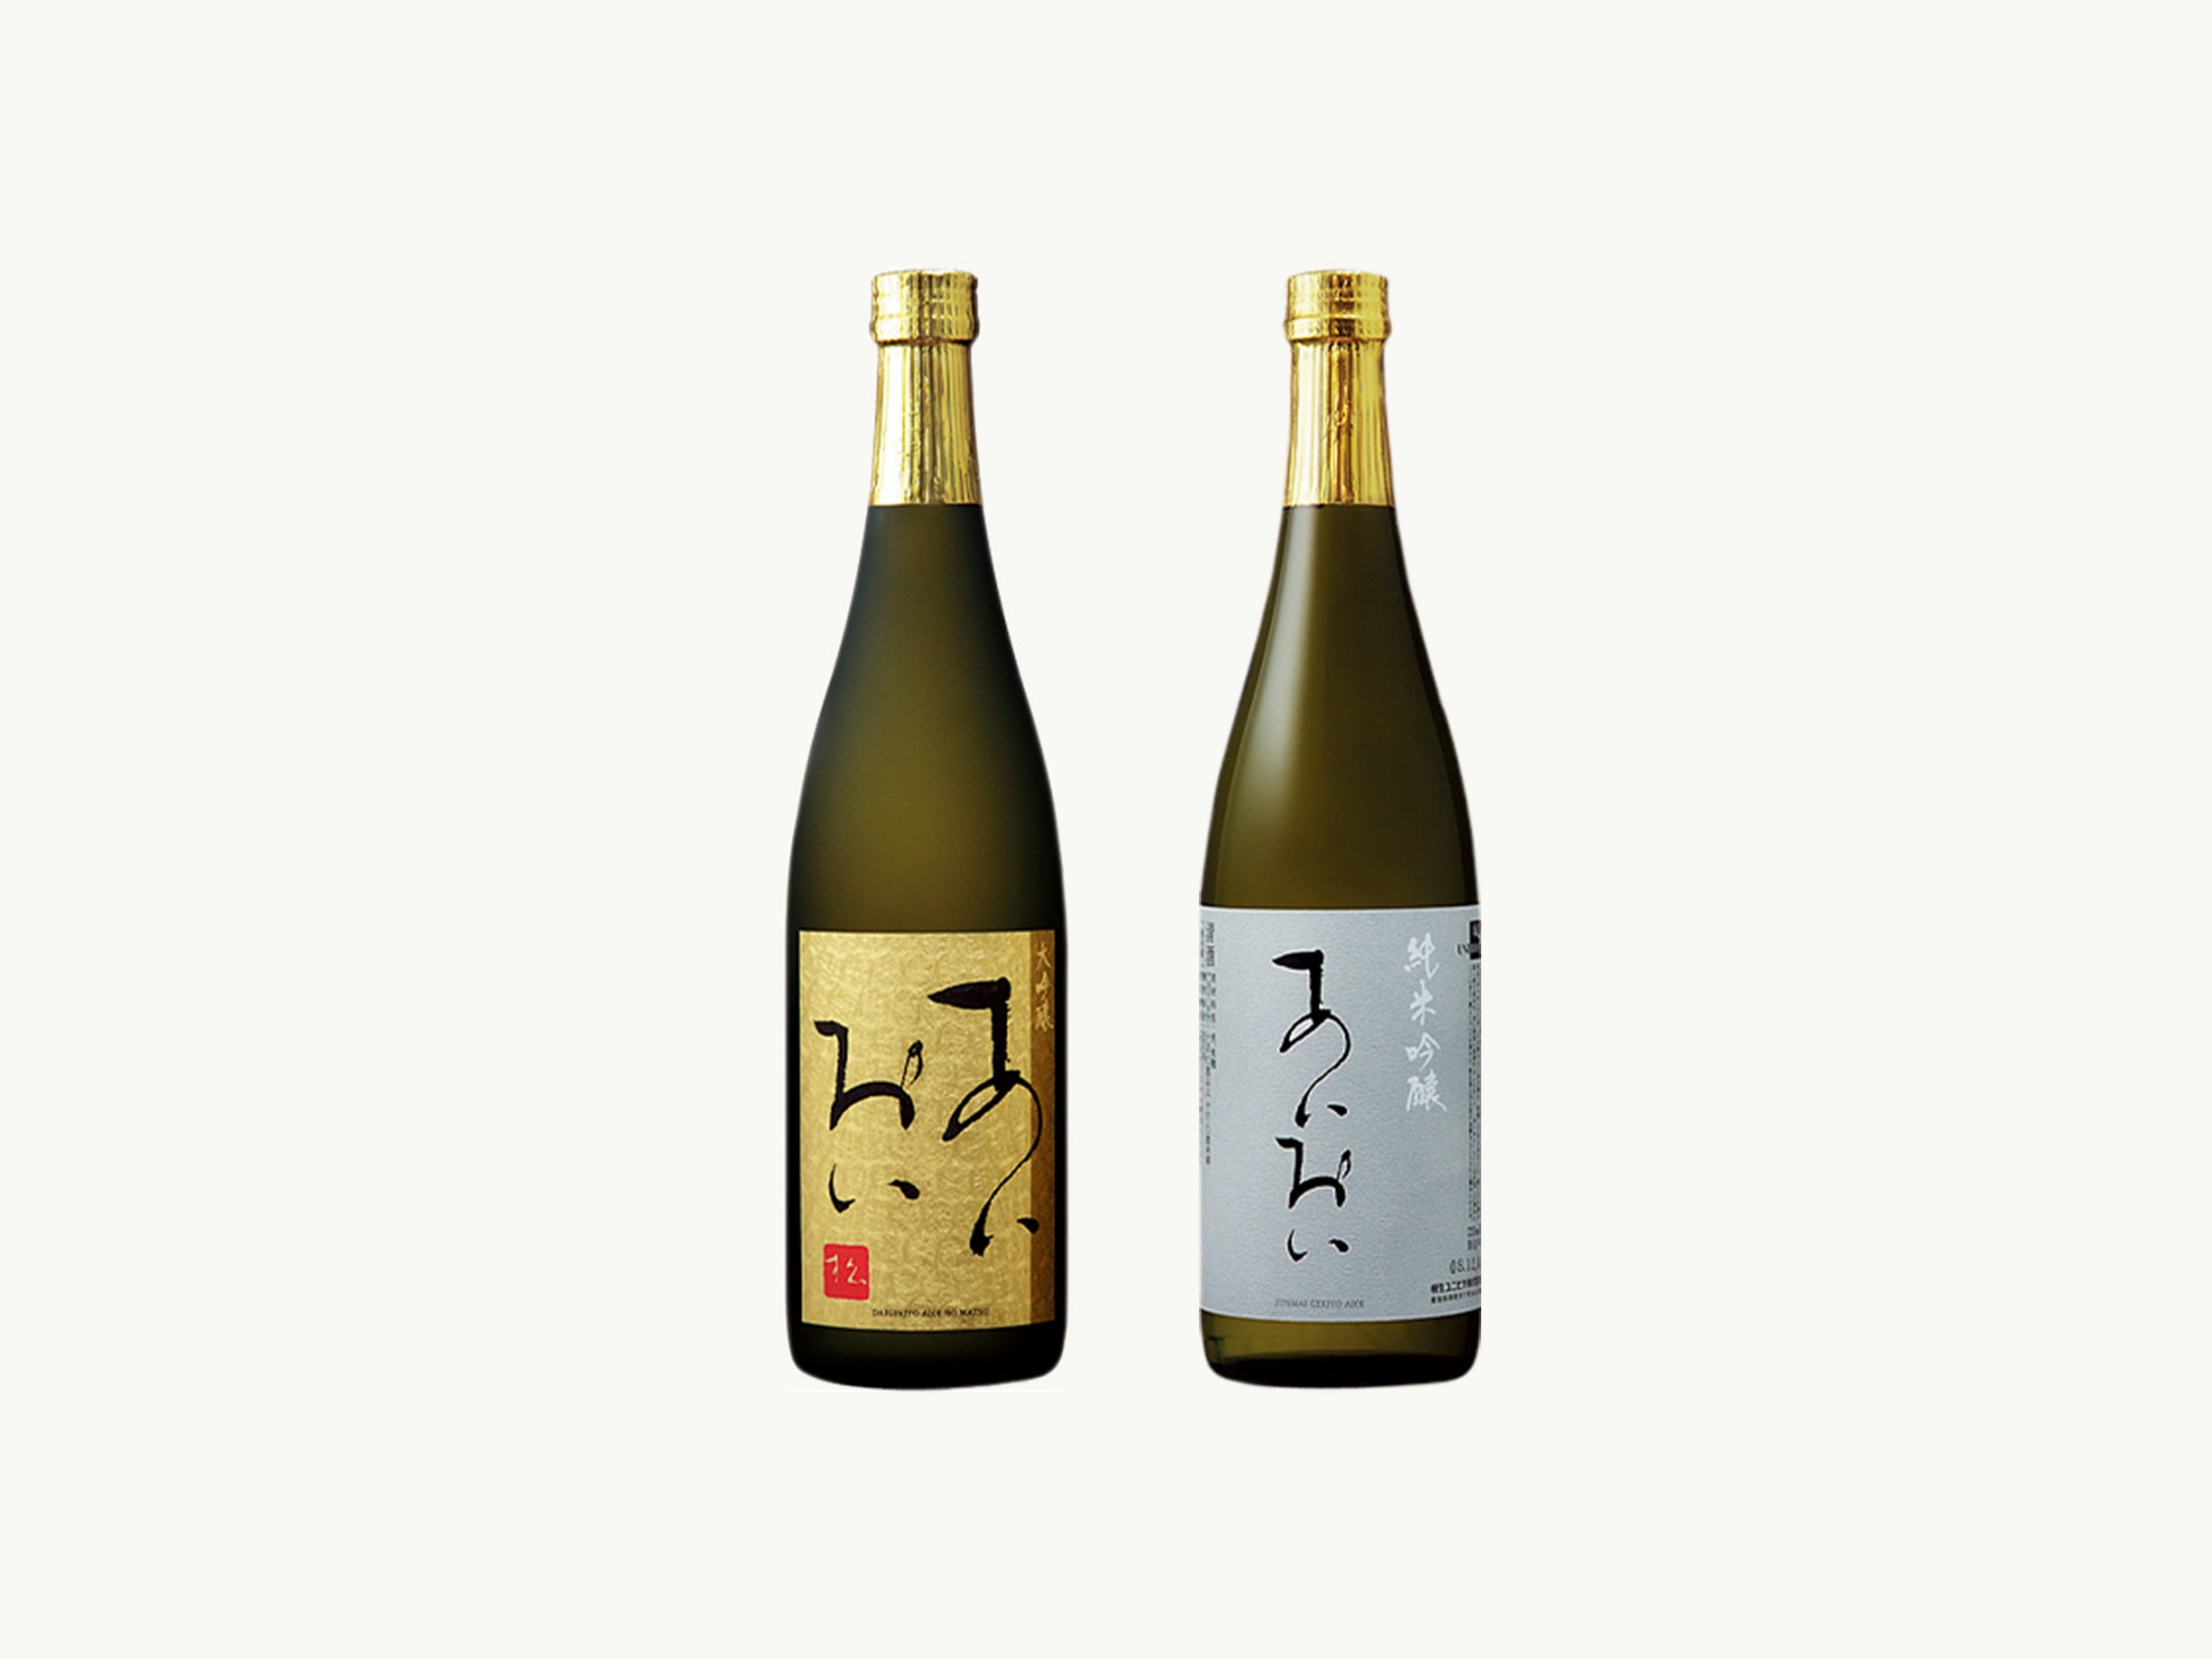 伝統の味 受賞酒セット (2本入) – 相生ユニビオ 公式オンラインストア